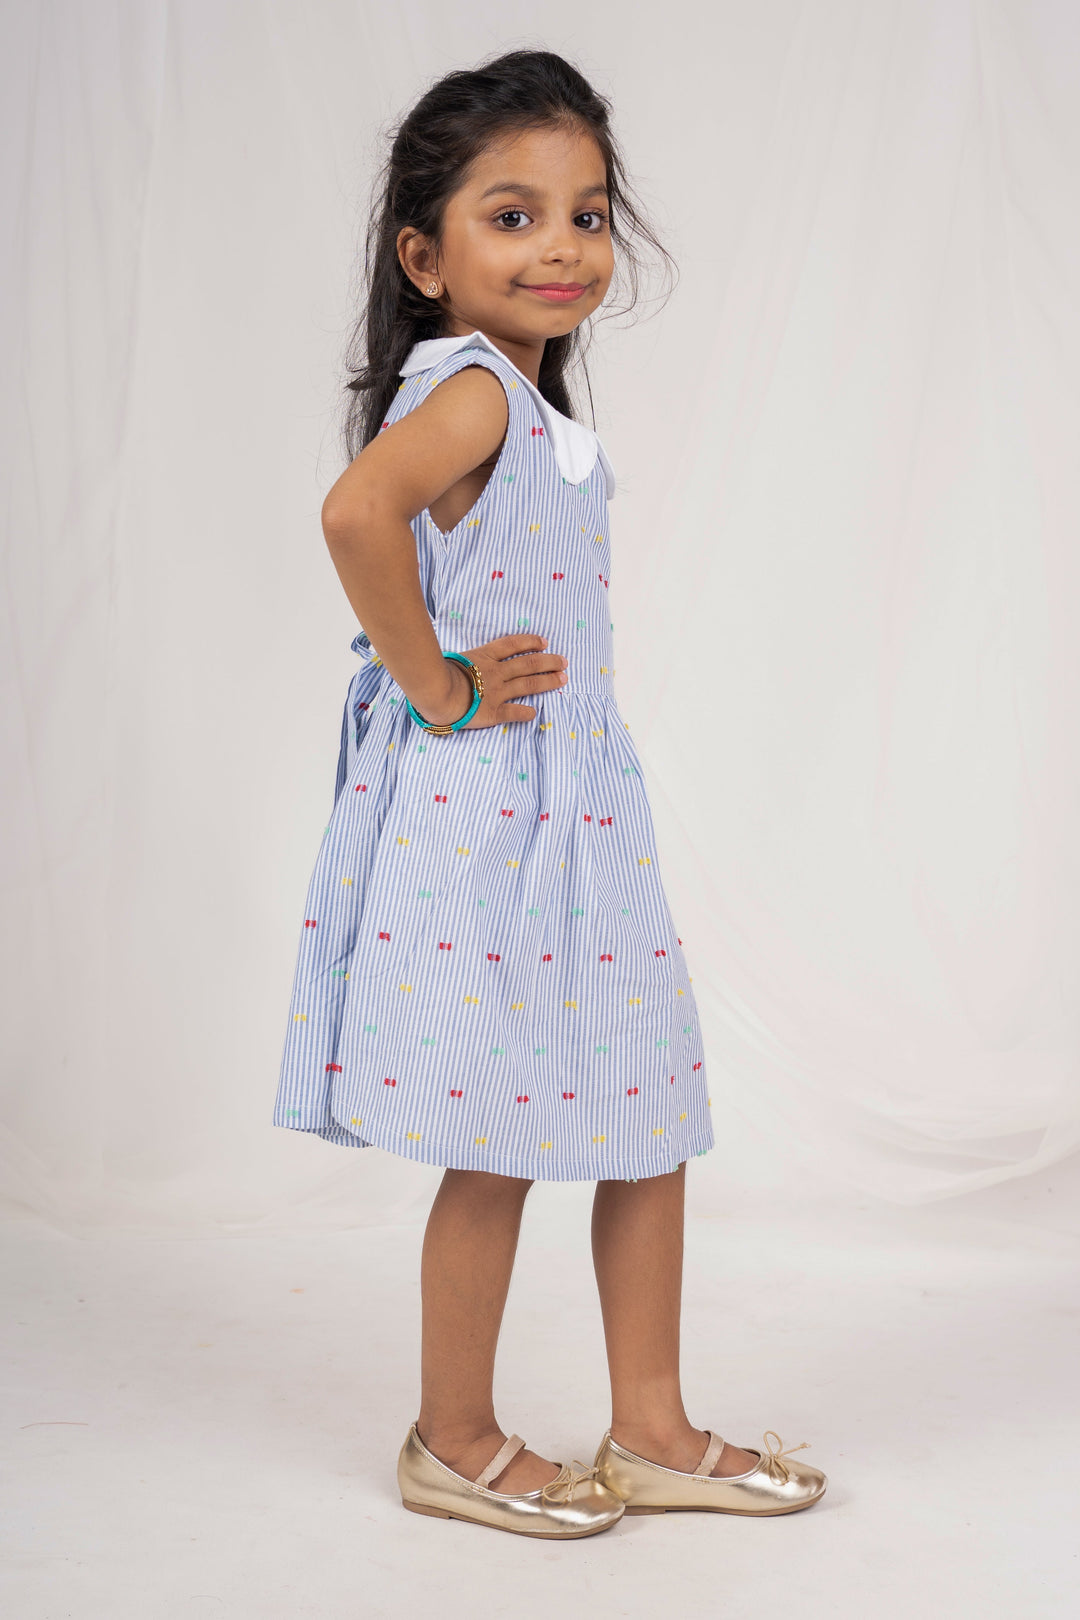 The Nesavu Frocks & Dresses Soft Cotton Peter Pan Collar Cotton Gown For Baby Girls psr silks Nesavu